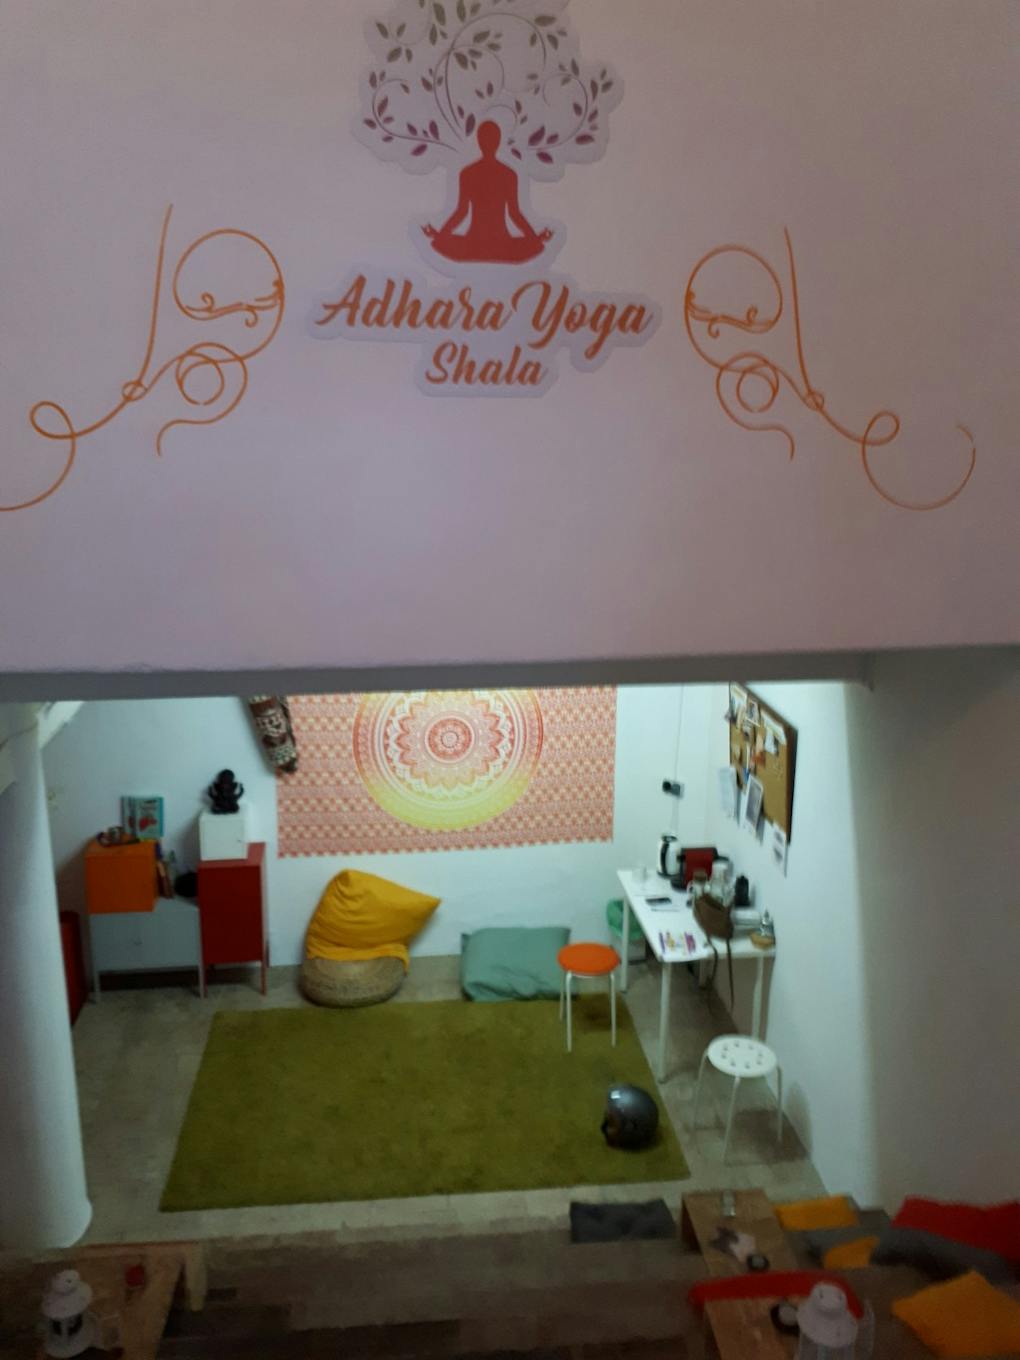 Adhara Yoga Shala